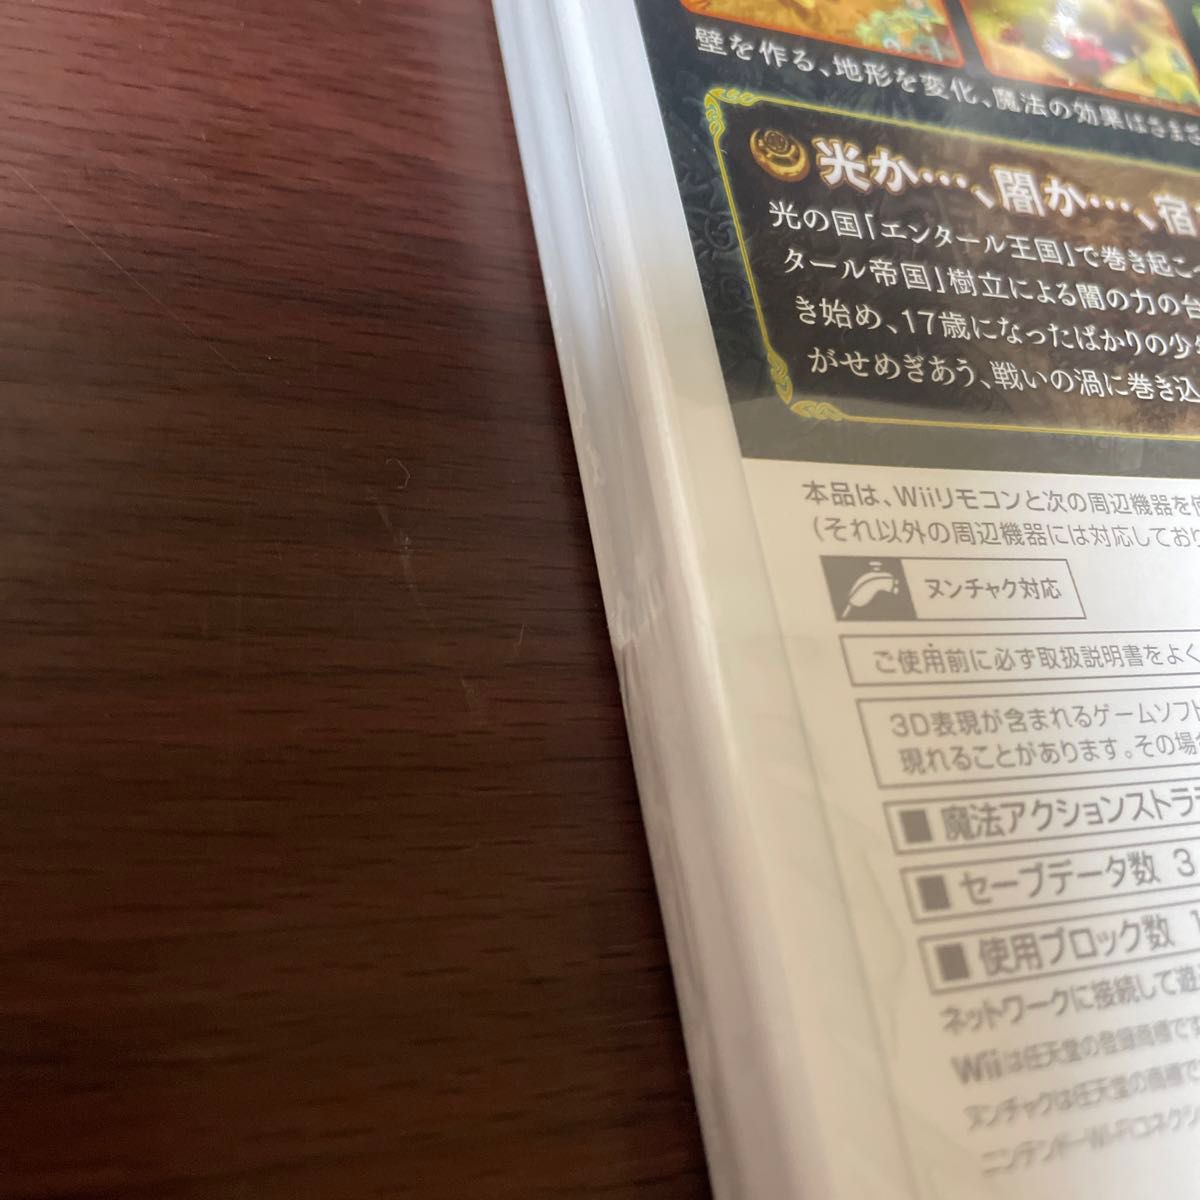 【Wii】 タクトオブマジック